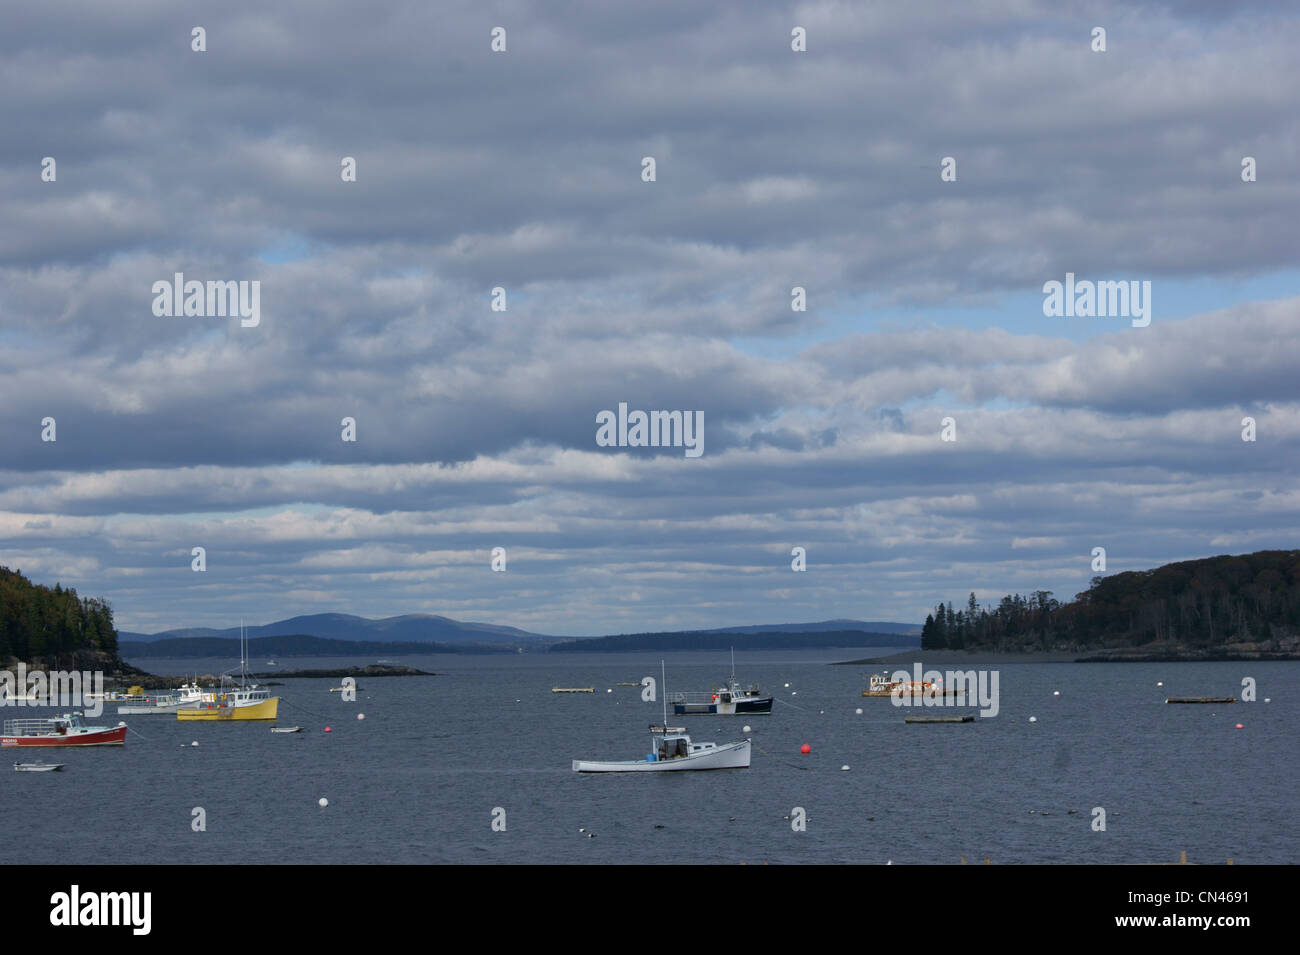 Fishing boats, Bar Harbor, Maine. Stock Photo